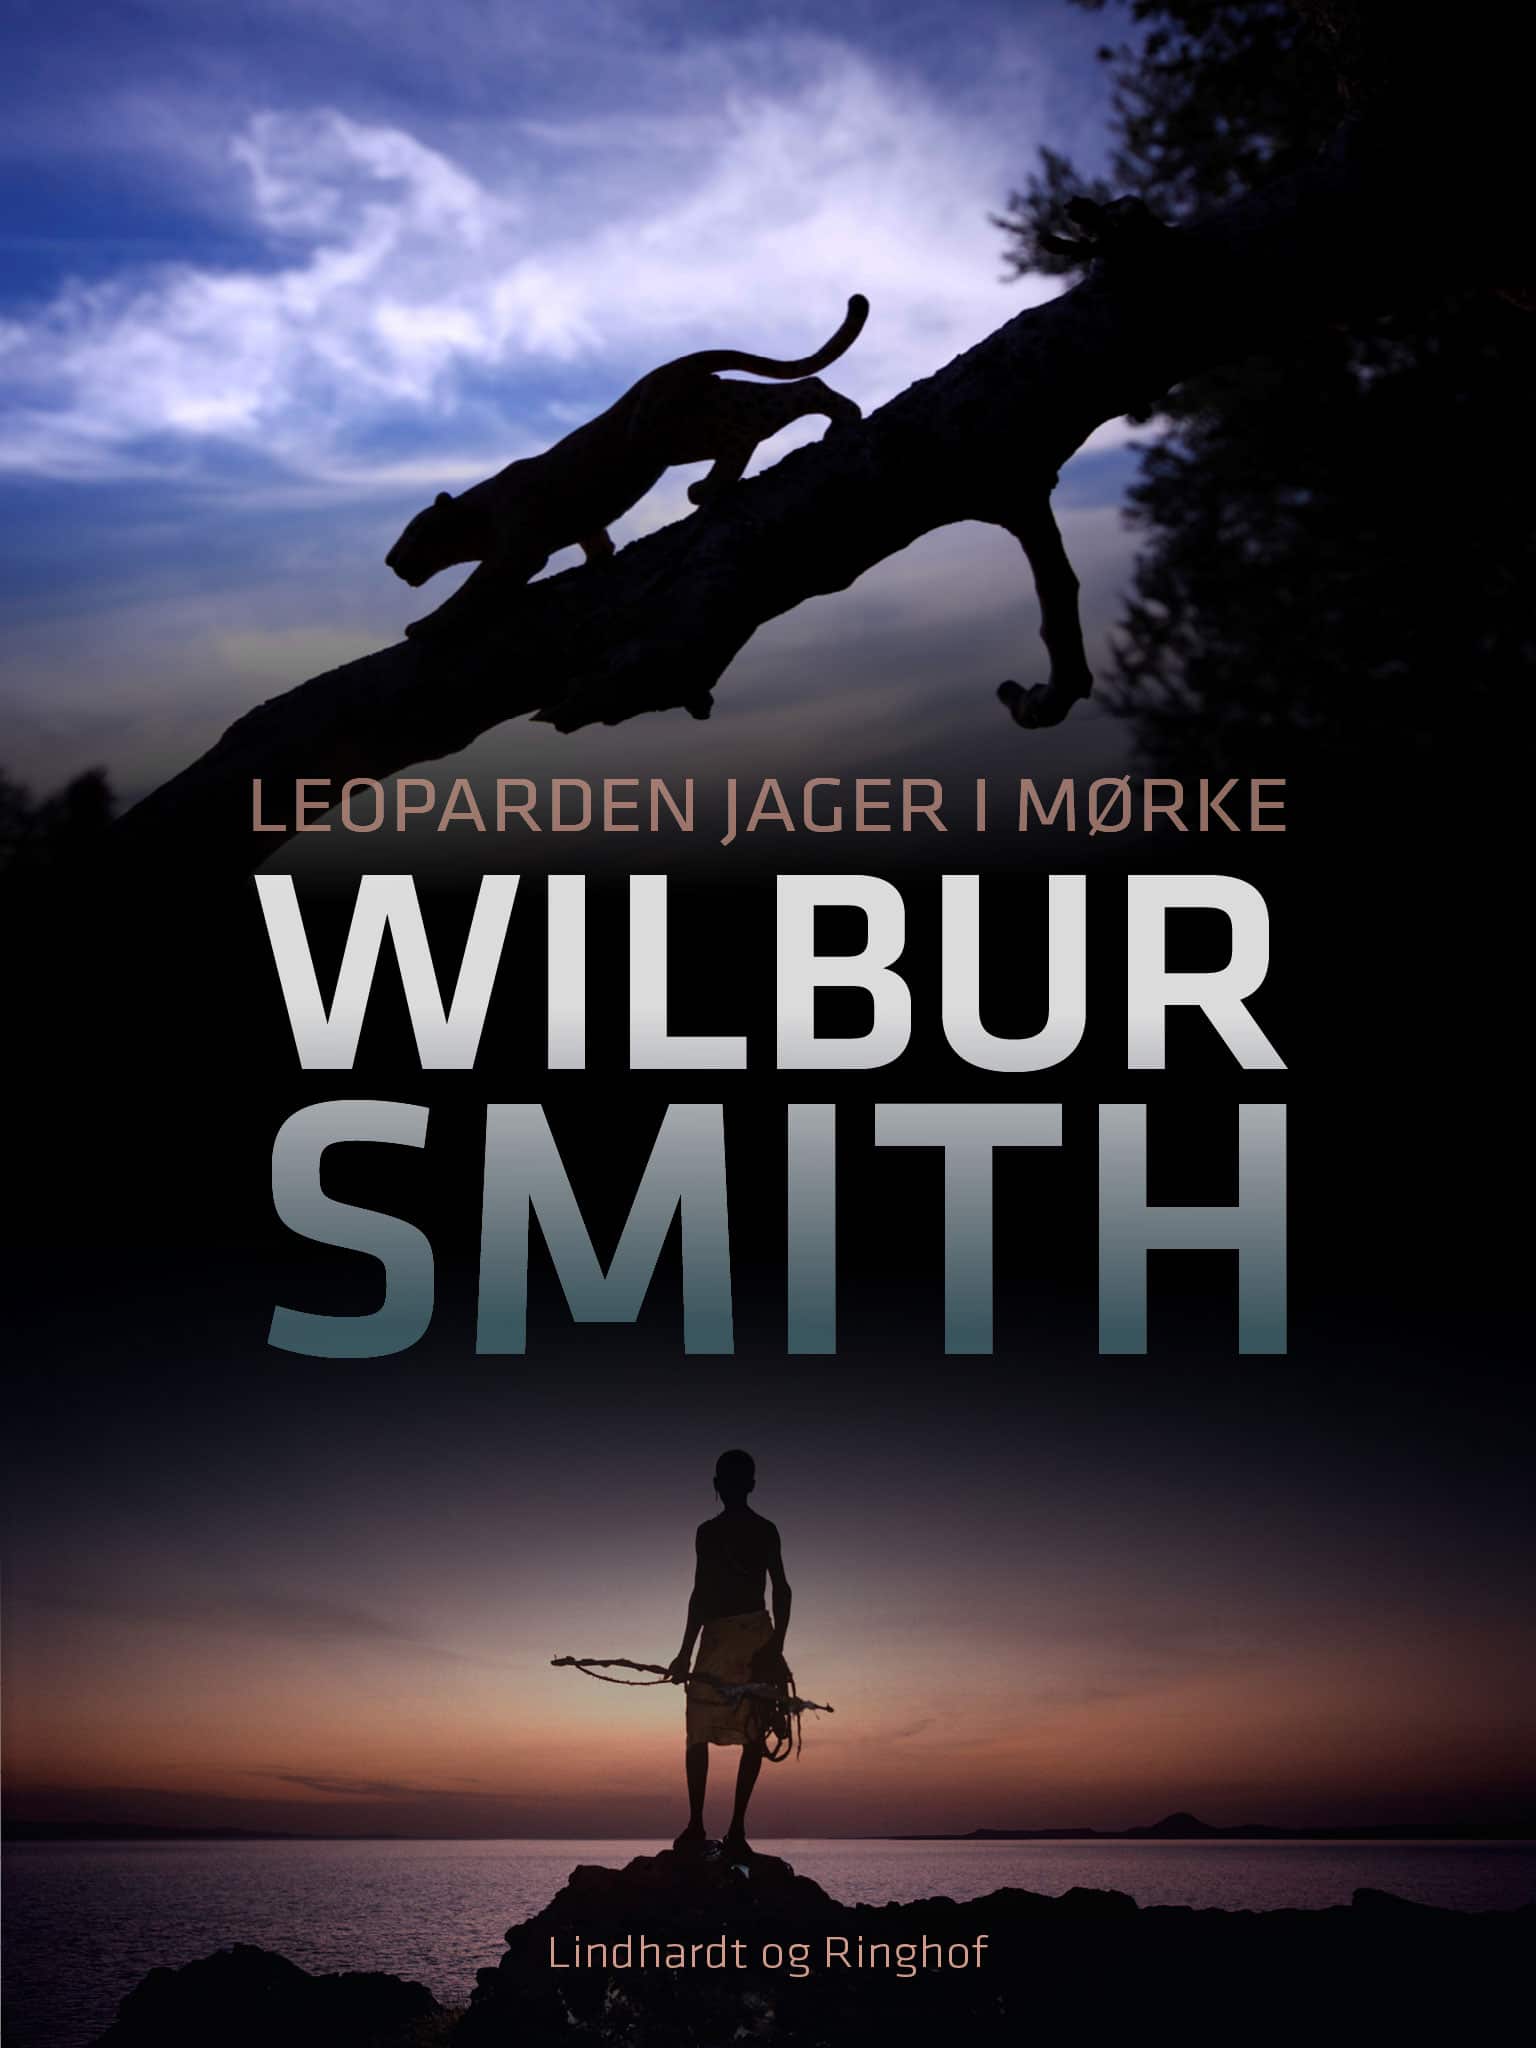 Leoparden jager i mørke, Wilbur Smith, Ballantyne, Ballantyne-serien